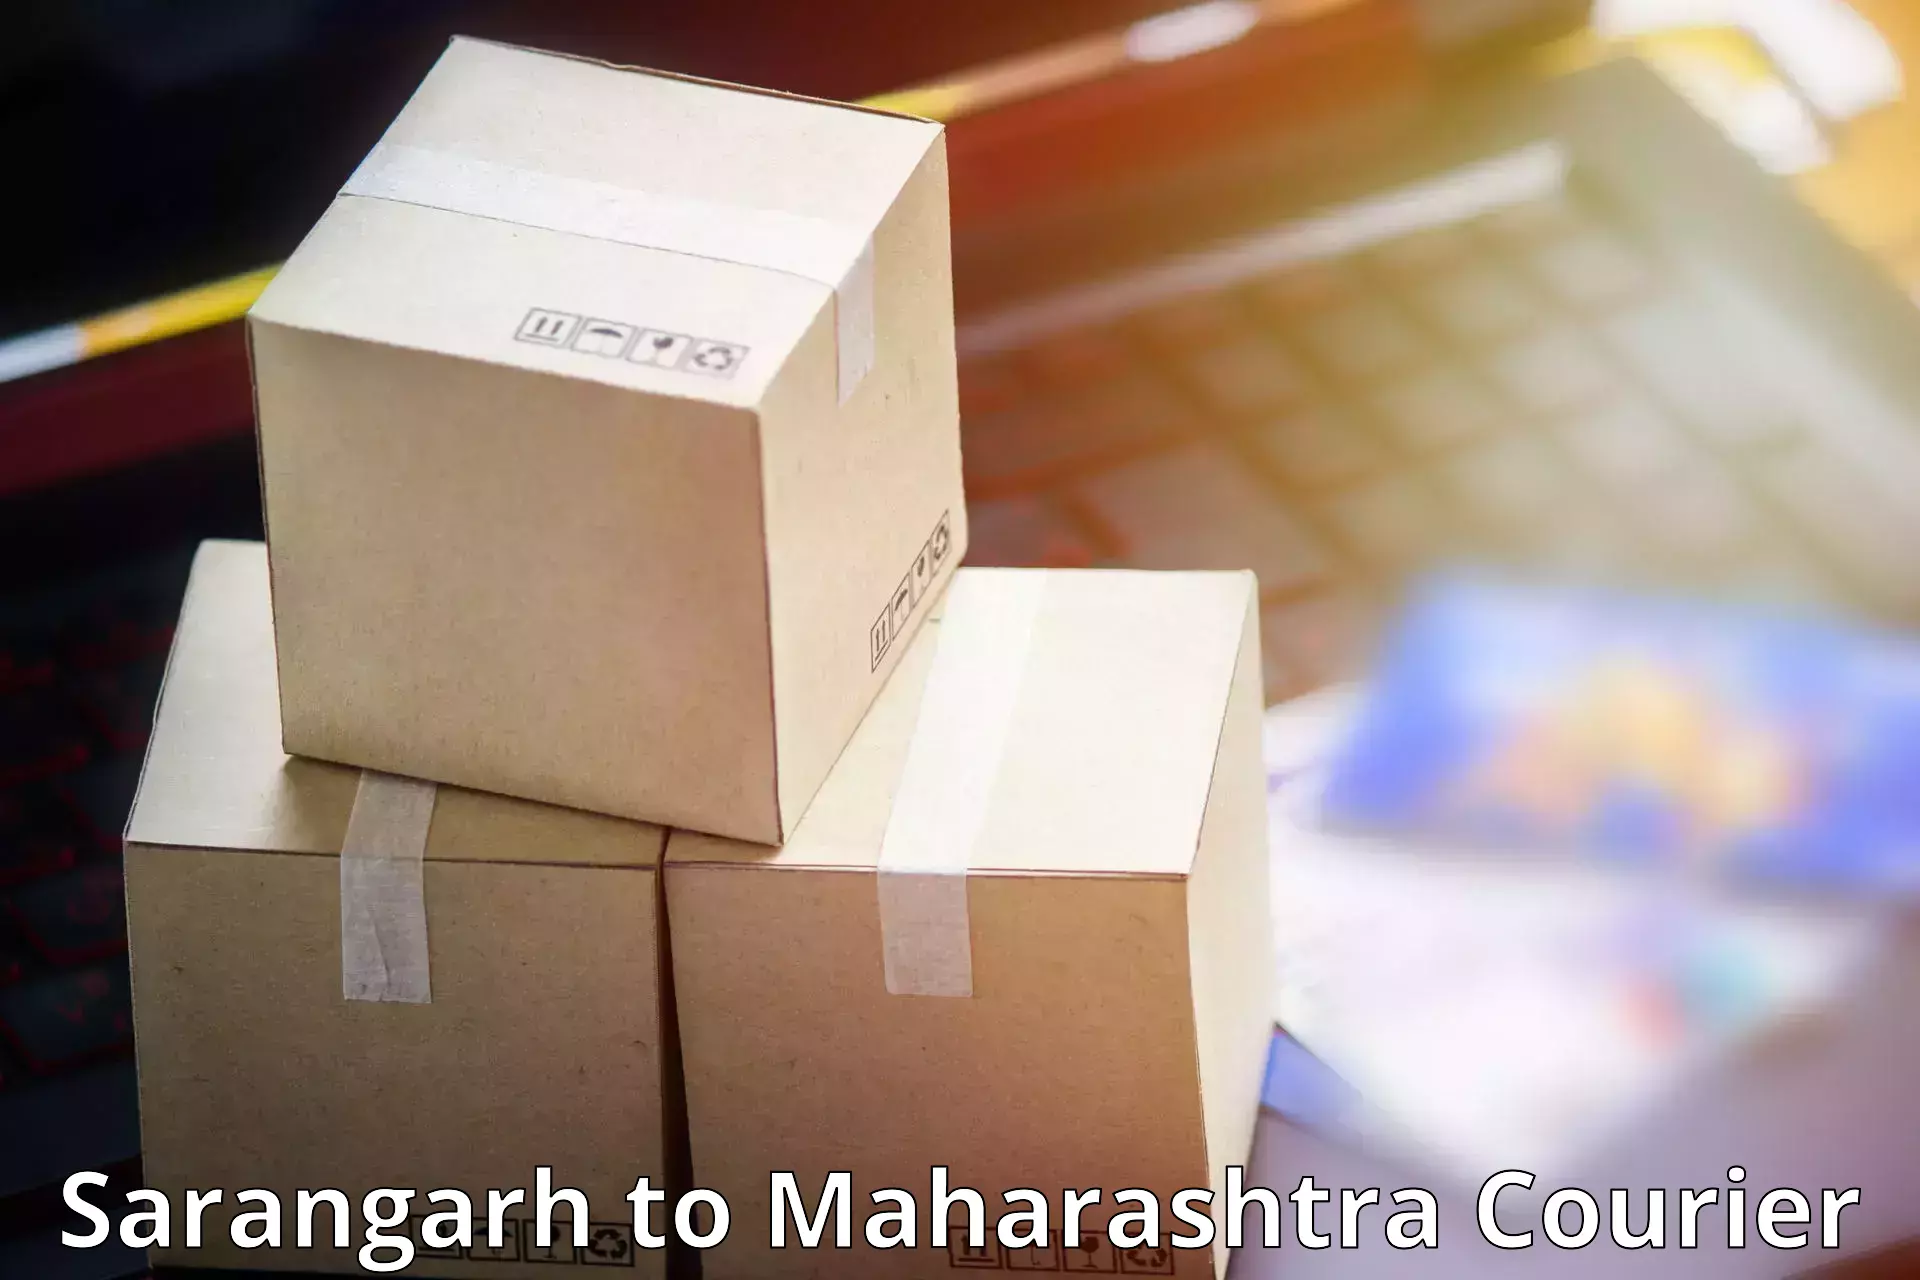 Urban courier service Sarangarh to Karanja